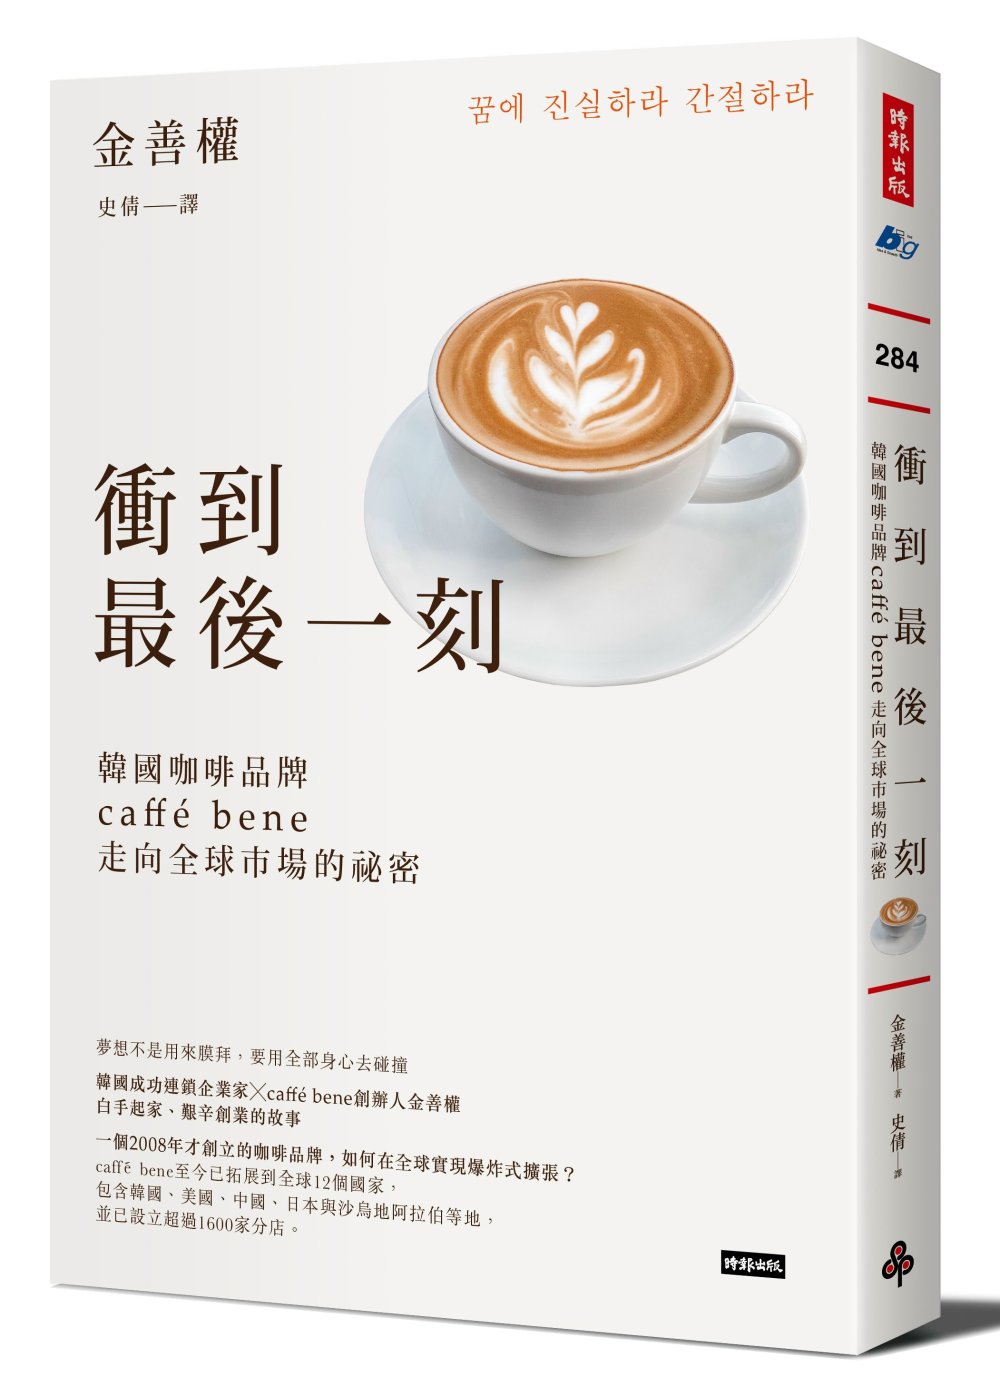 衝到最後一刻：韓國咖啡品牌caffé bene走向全球市場的...